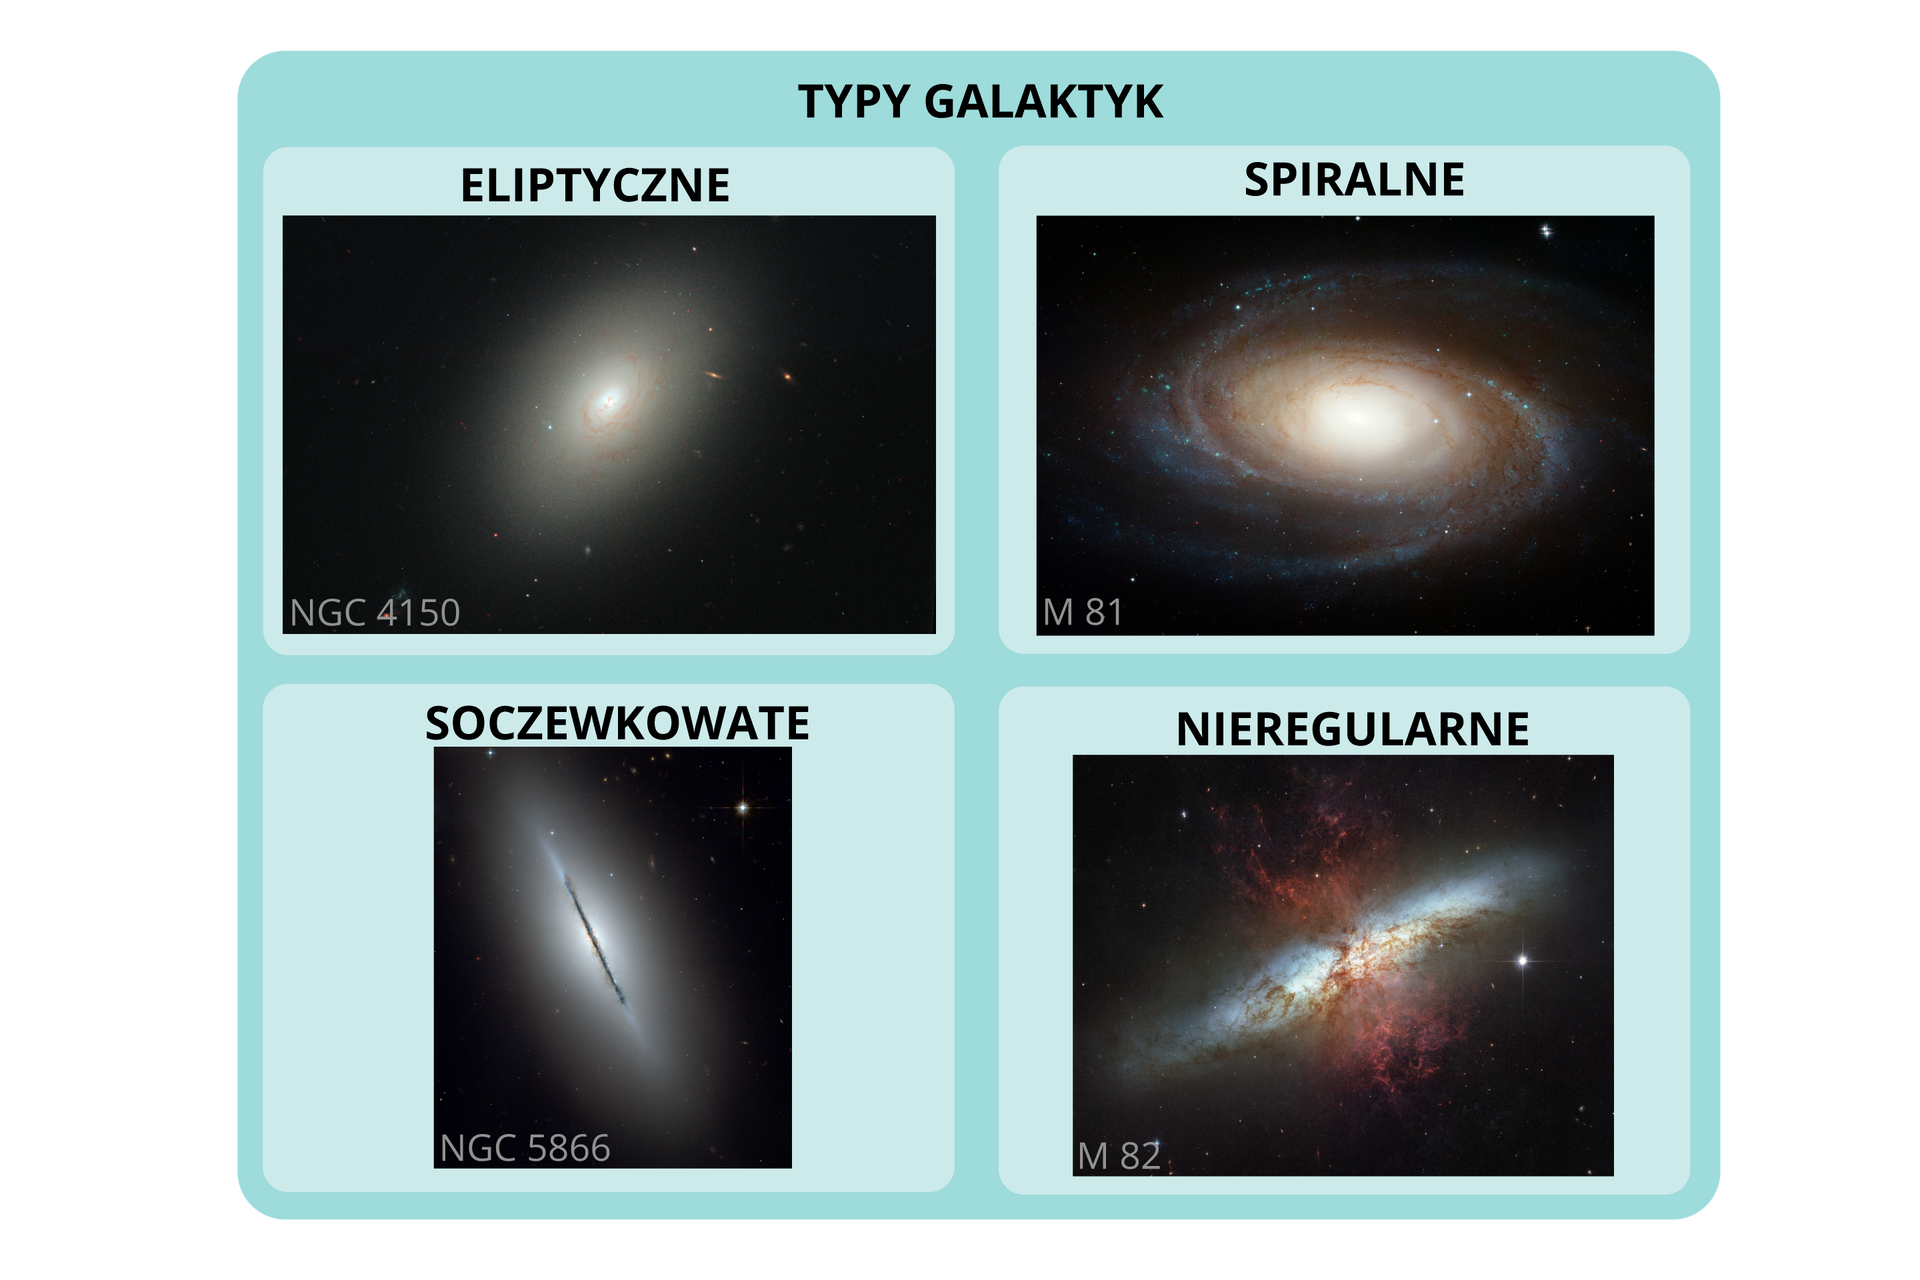 Ilustracja przedstawia cztery typy galaktyk: eliptyczne, spiralne, soczewkowate i nieregularne. Galaktyka eliptyczna ma kształt elipsy z widocznym, jaśniejszym, punktowym centrum, jądrem galaktyki. Galaktyka spiralna ma kształt dysku z ramionami spiralnymi wychodzącymi z centrum galaktyki, jądra. Galaktyka soczewkowata ma postać cienkiego, długiego wrzeciona. Jest to typ pośredni pomiędzy galaktyką eliptyczną a spiralną. Galaktyka nieregularna nie ma określonego symetrycznego kształtu, przypomina nierównomiernie rozłożoną, różnokolorową mgłę. 